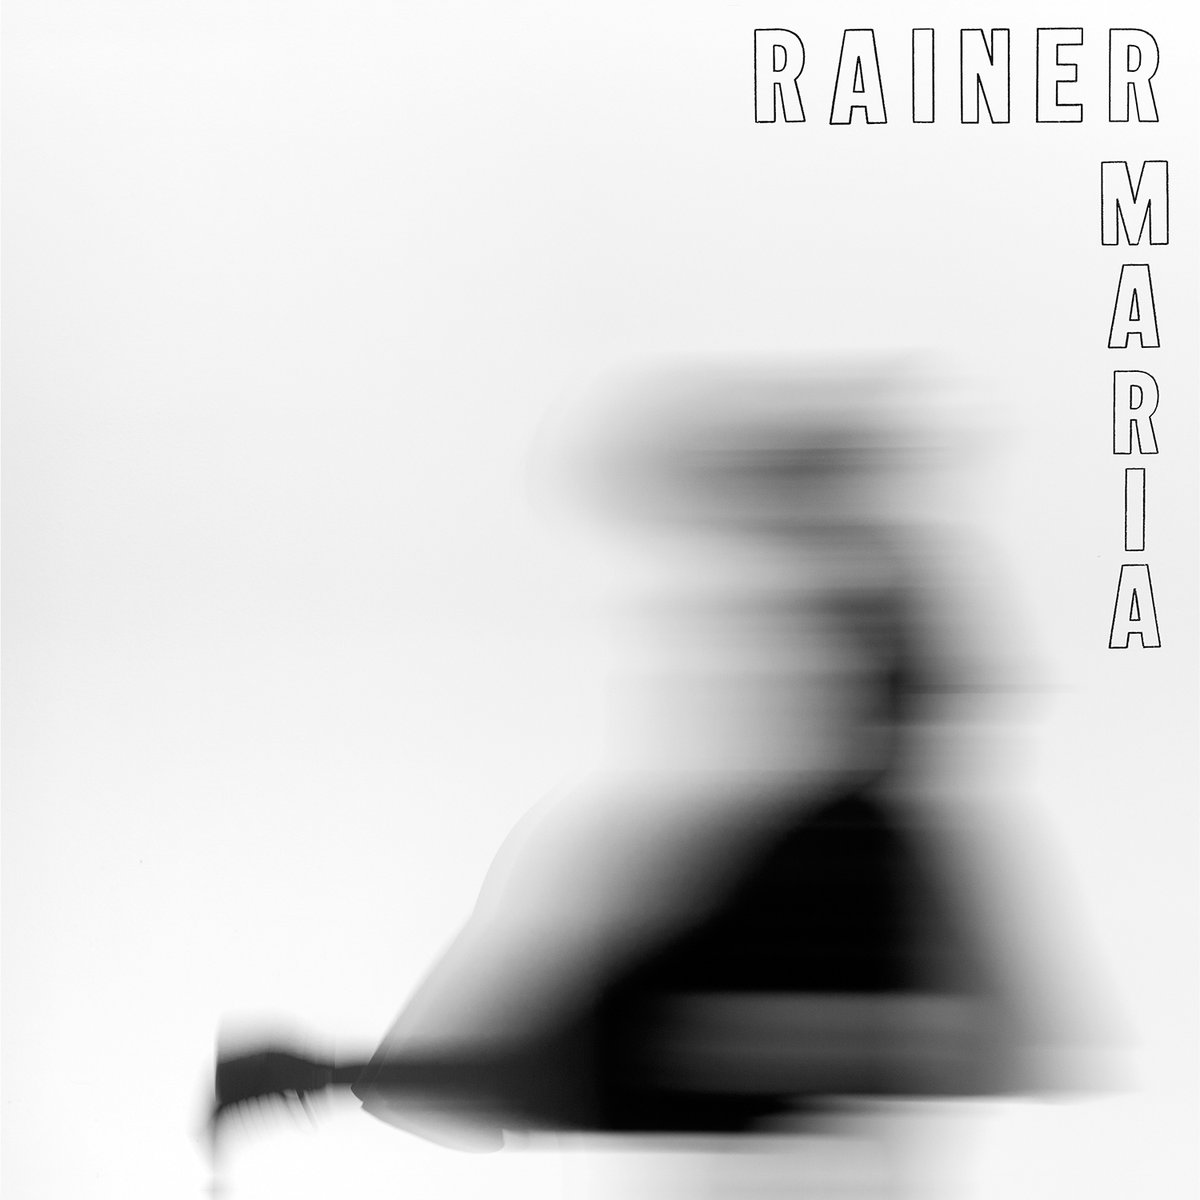 Rainer Maria S/T